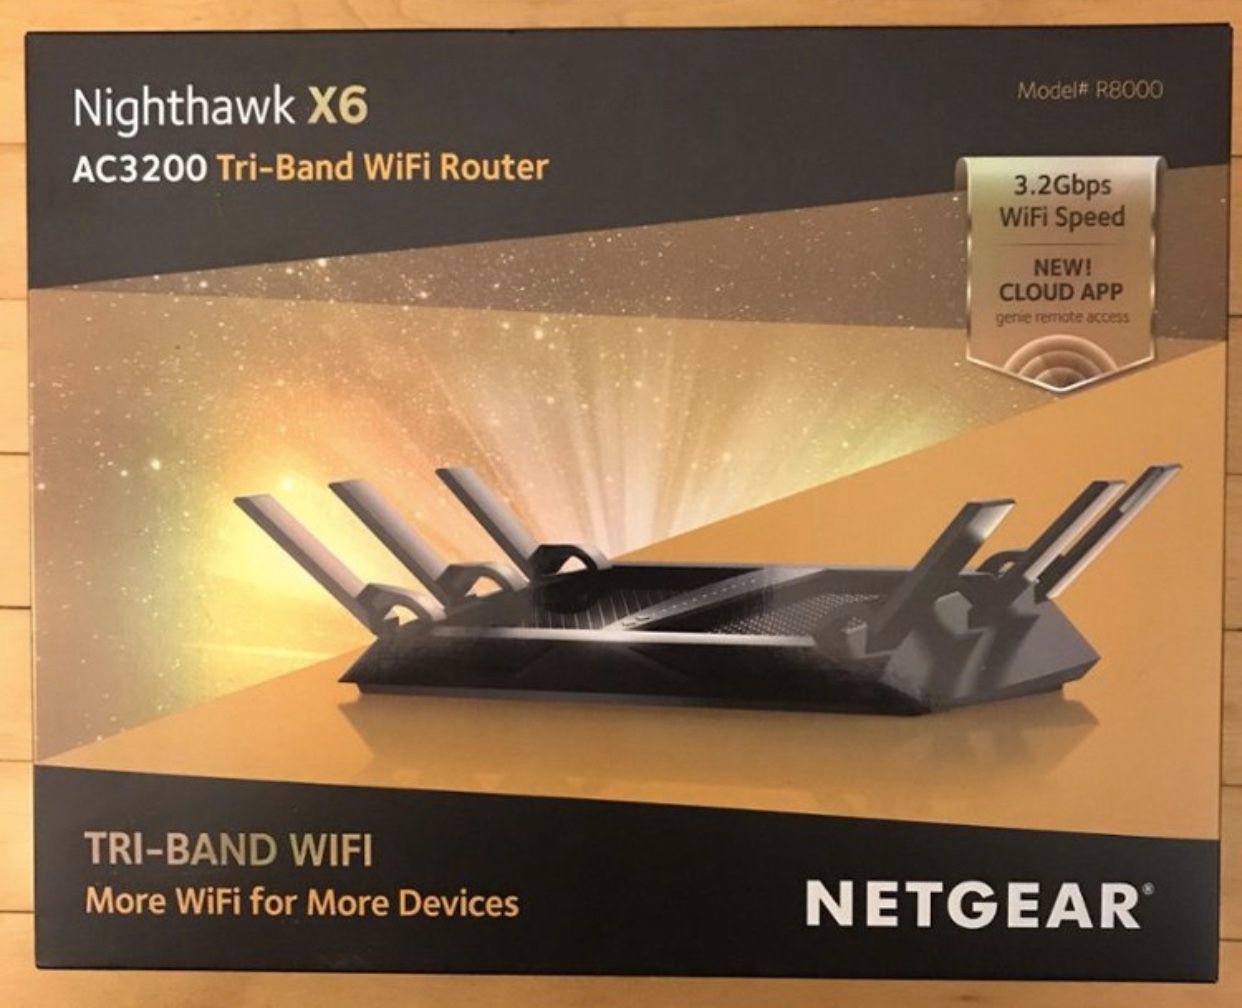 Nighthawk X6 AC3200 Tri-Band WiFi Router by Netgear